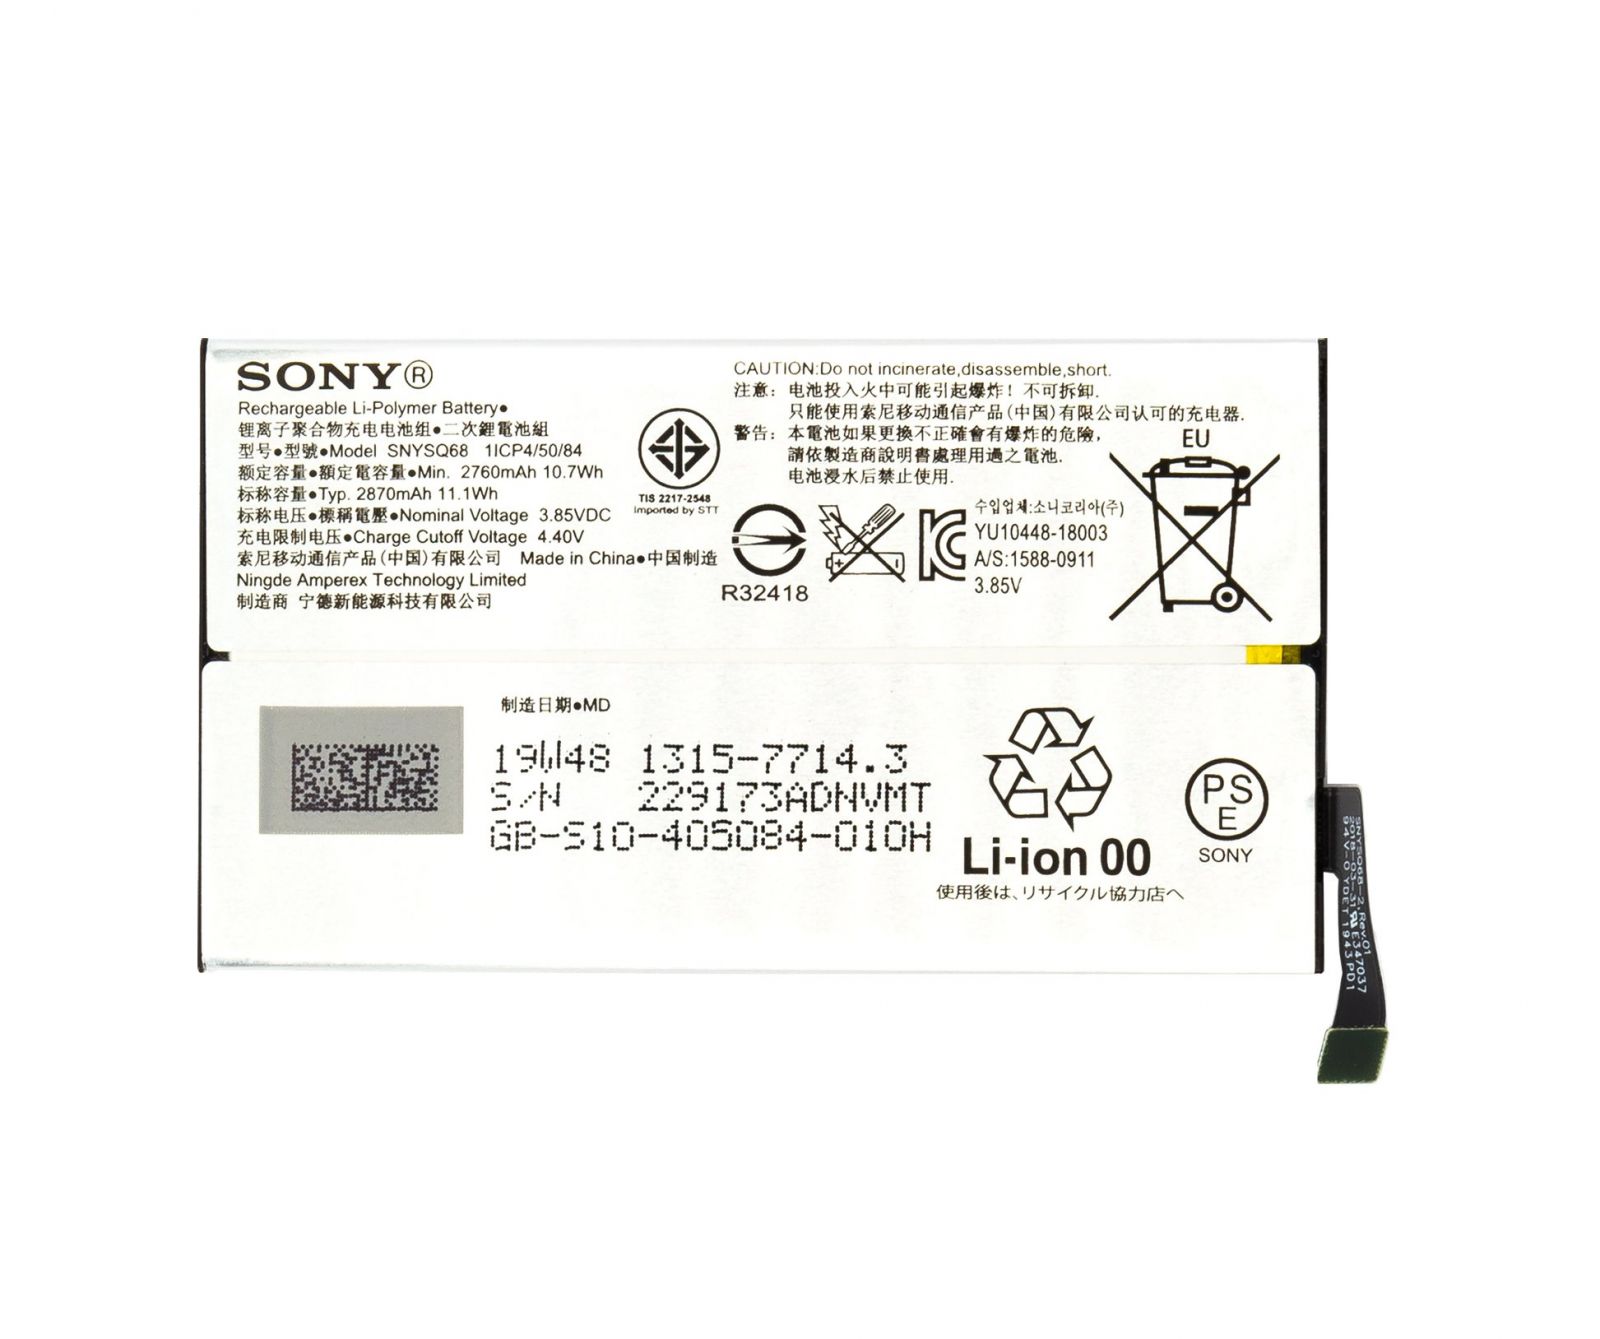 SNYSQ68 Sony Baterie 2870mAh Li-Pol (Service Pack) - Originál Sony Mobile